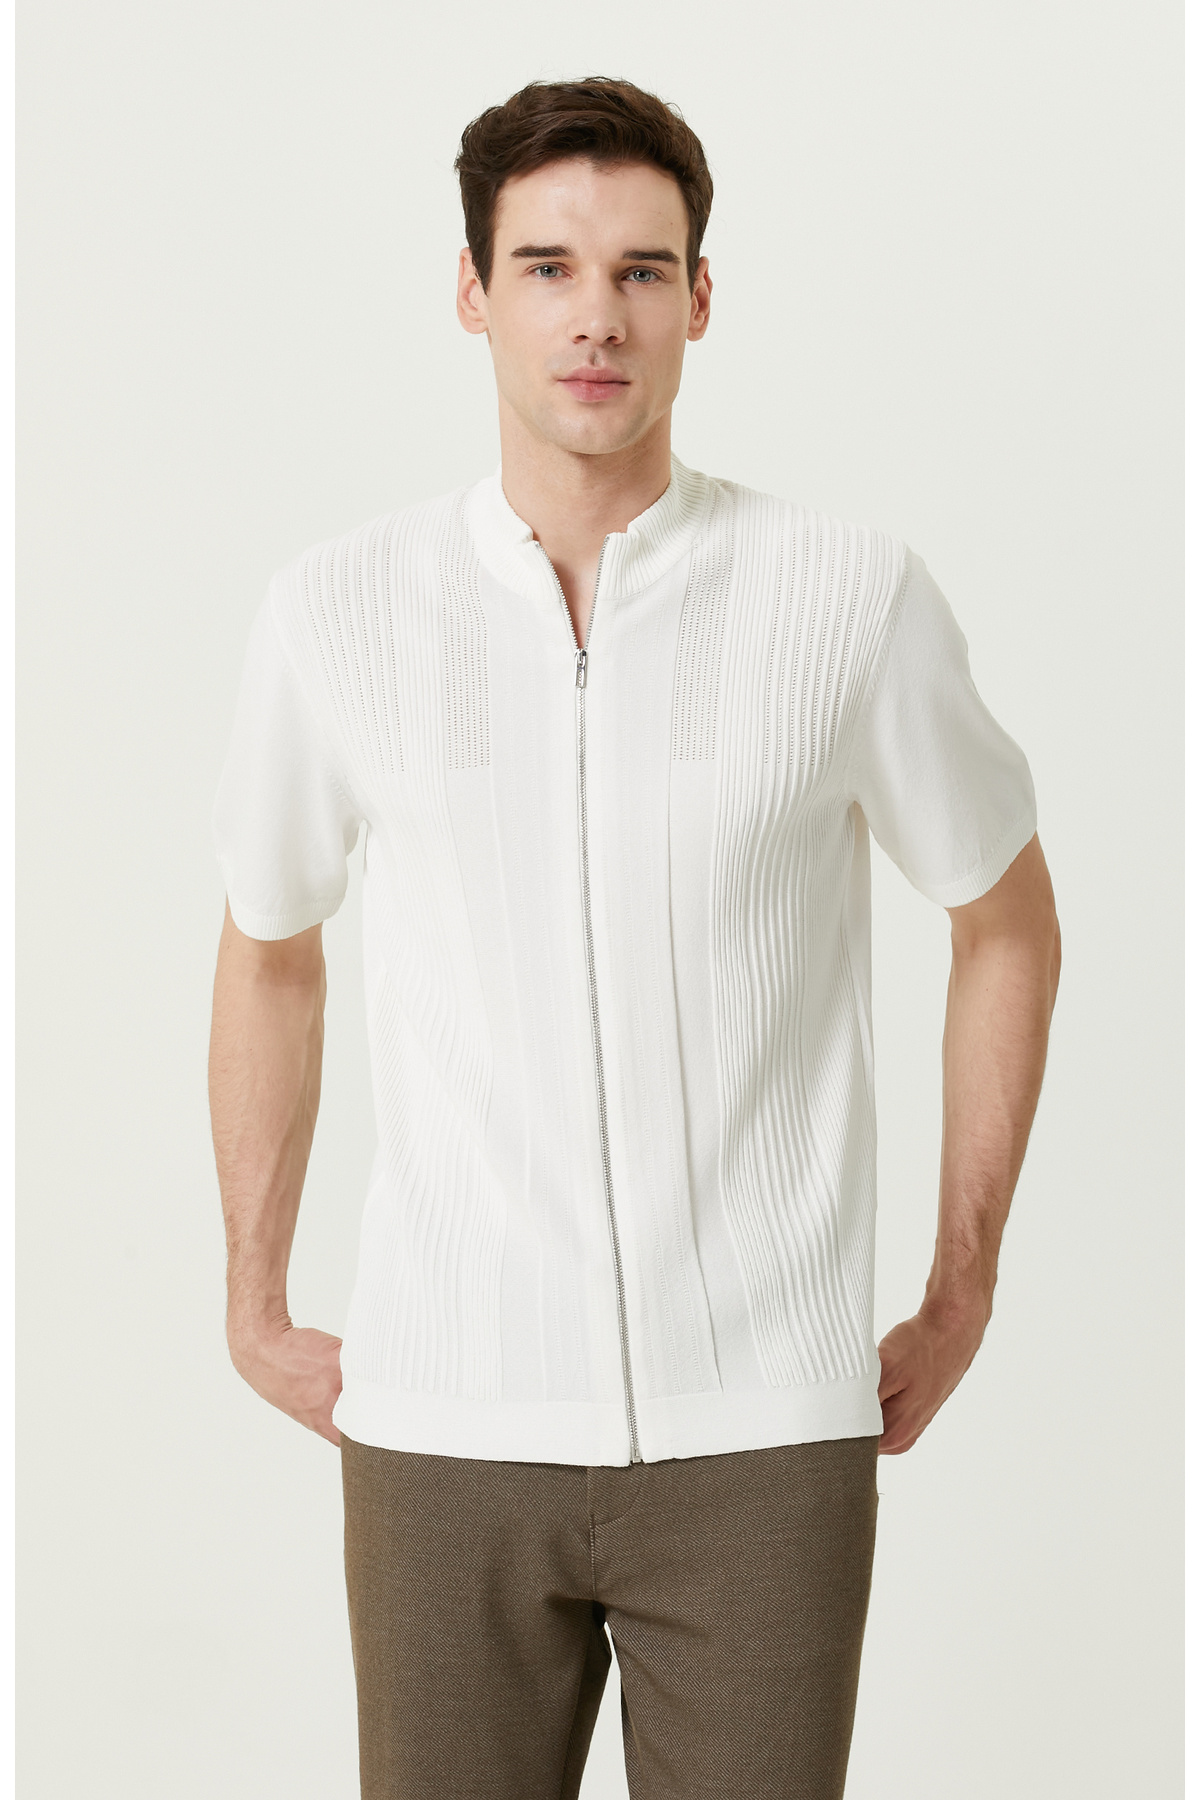 Жаккардовая трикотажная рубашка с короткими рукавами цвета экрю Network, экрю